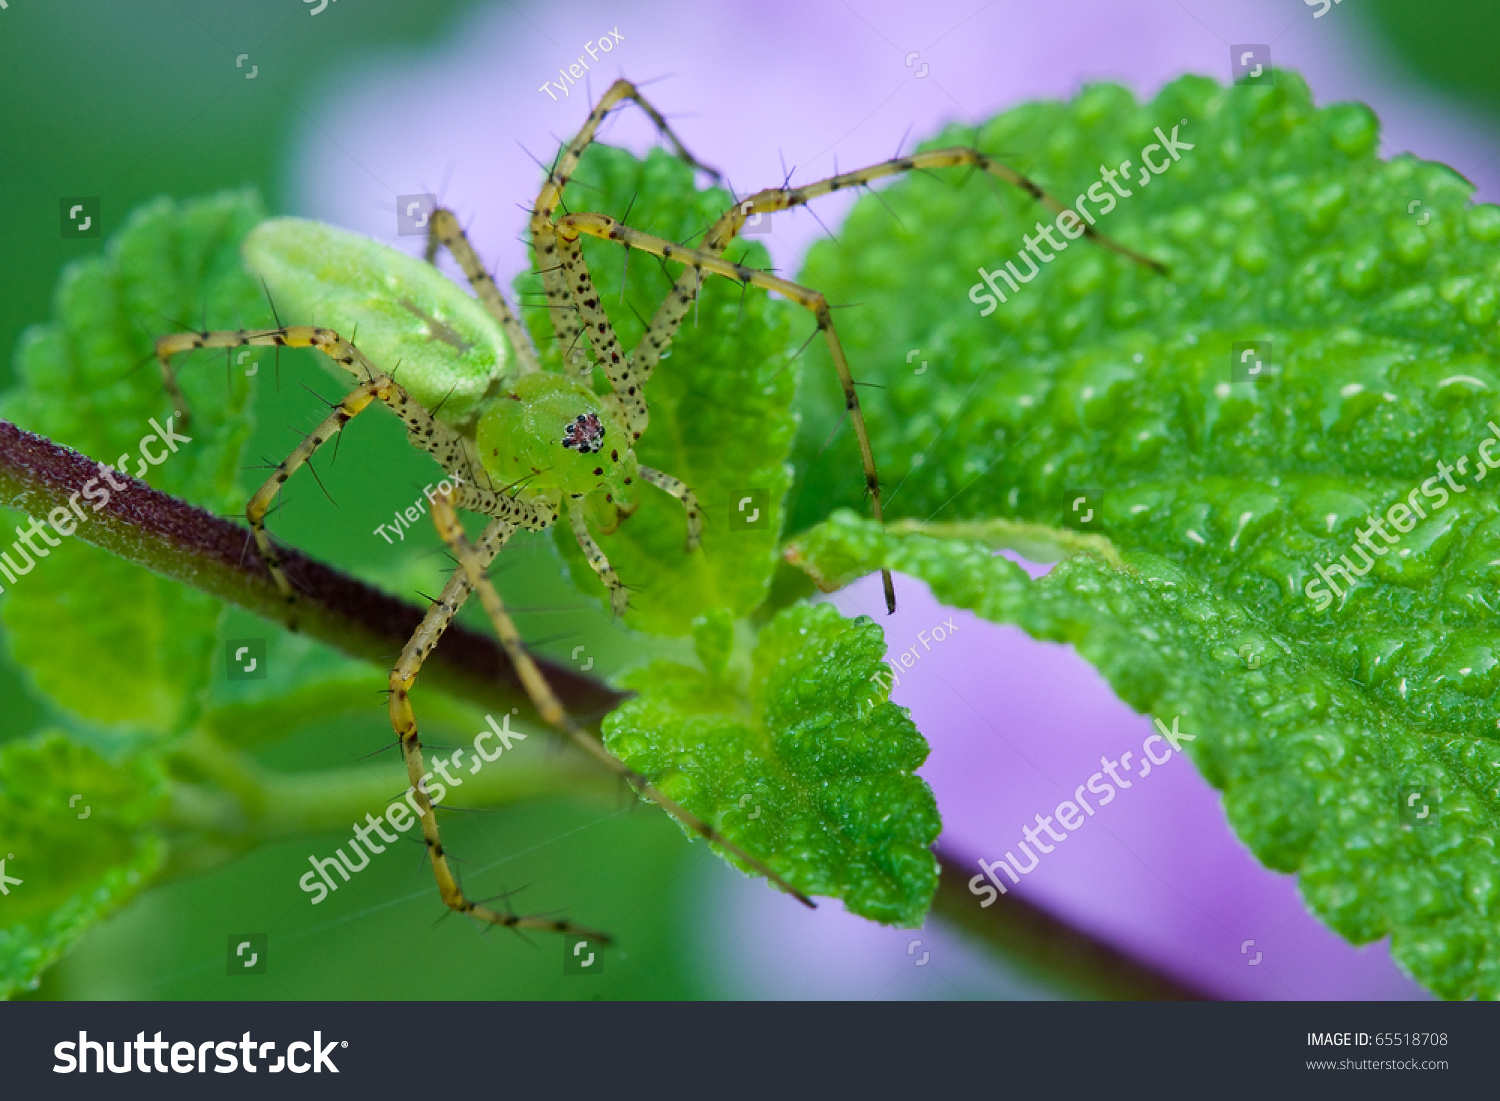 A green lynx spider sitting on a leaf waiting for prey #65518708